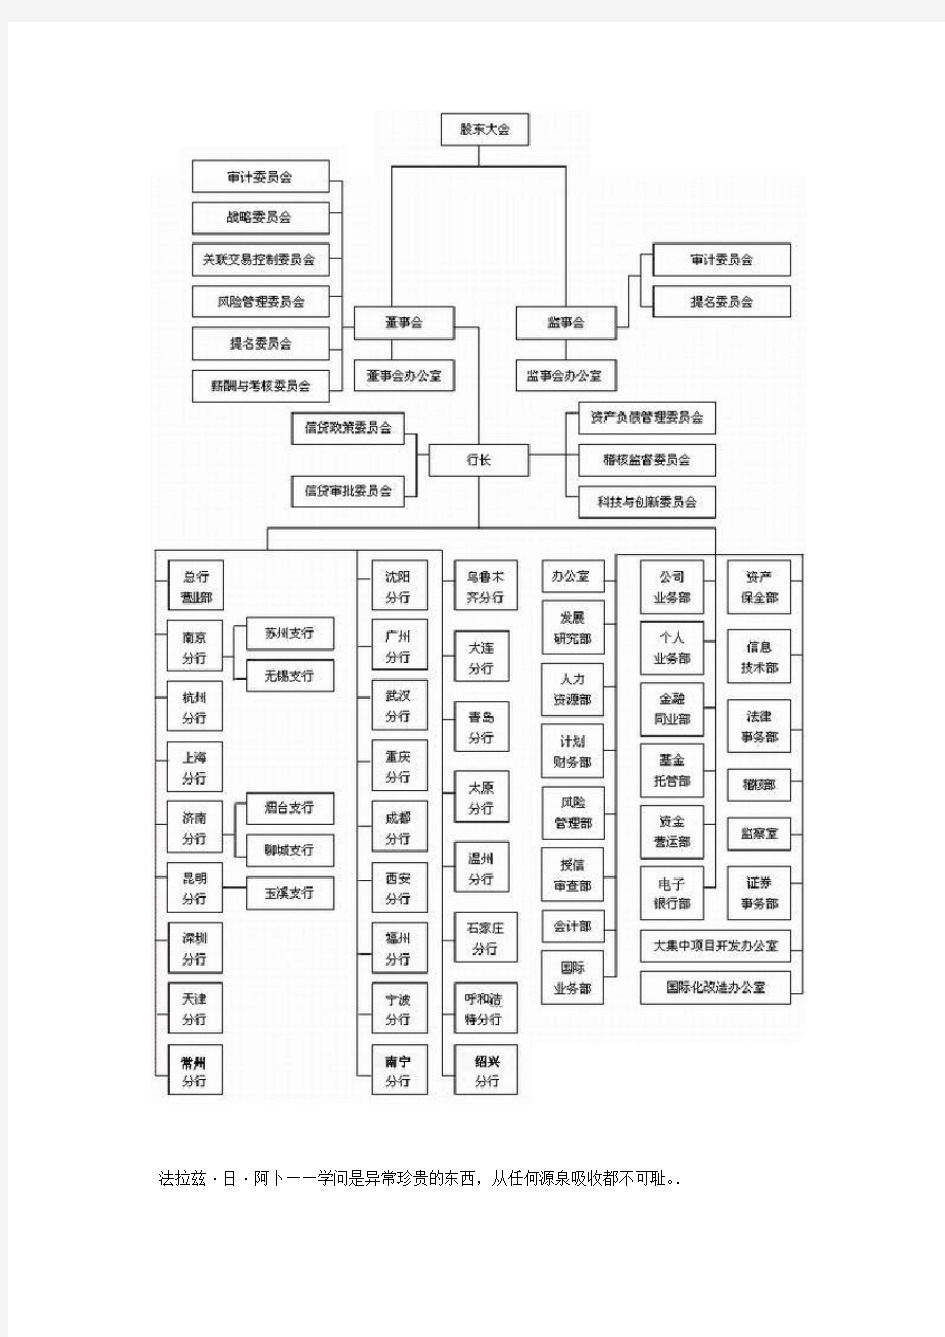 商业银行的组织架构图